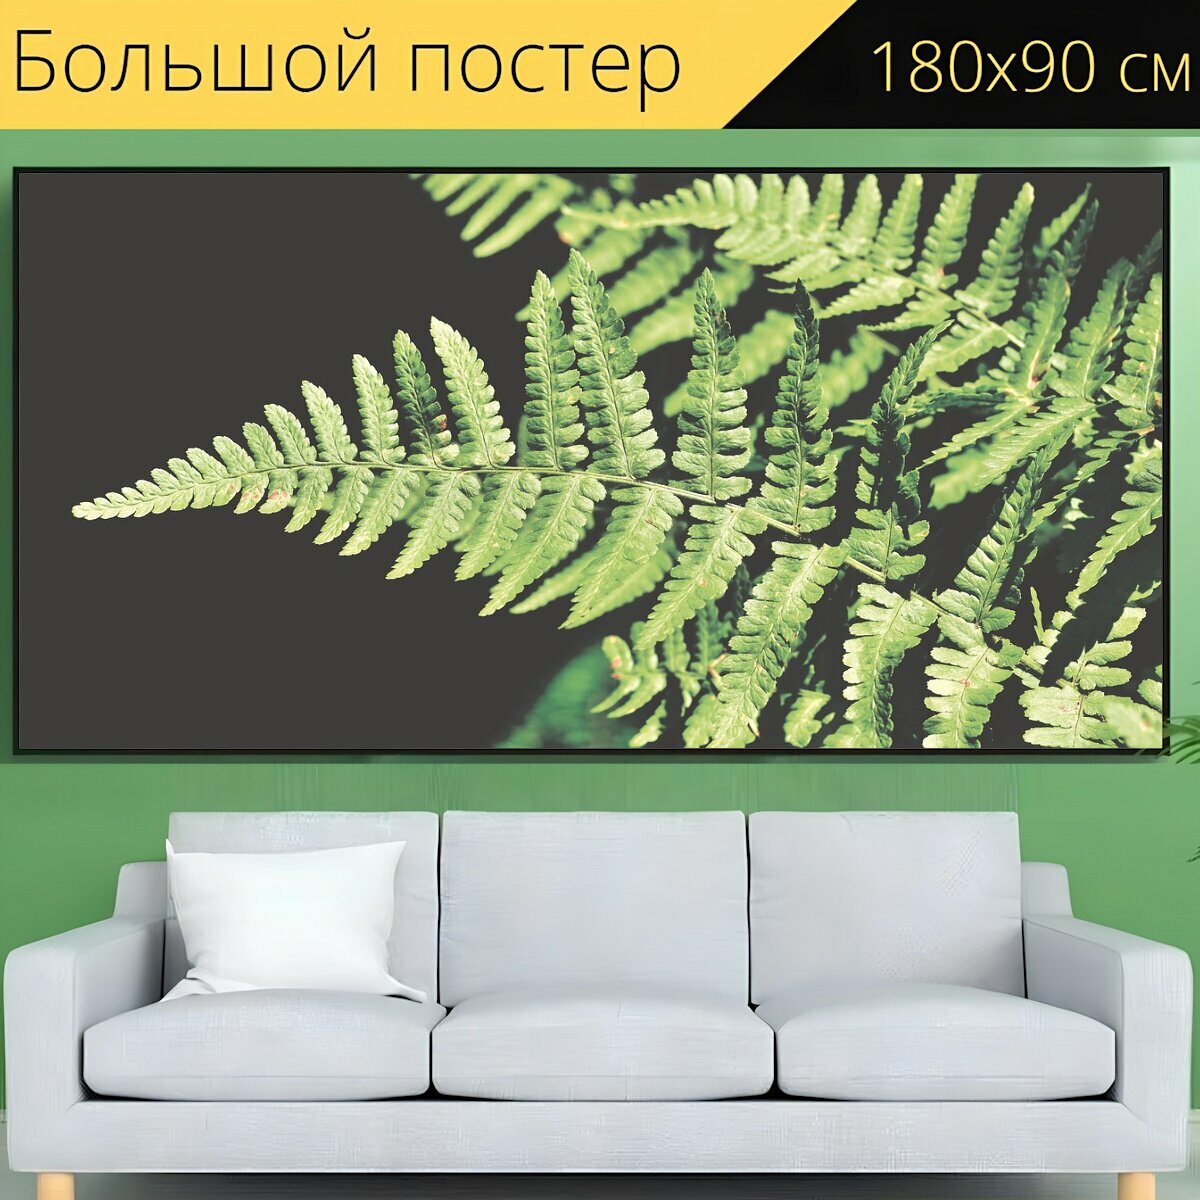 Большой постер "Папоротник, листья папоротника, растение папоротник" 180 x 90 см. для интерьера